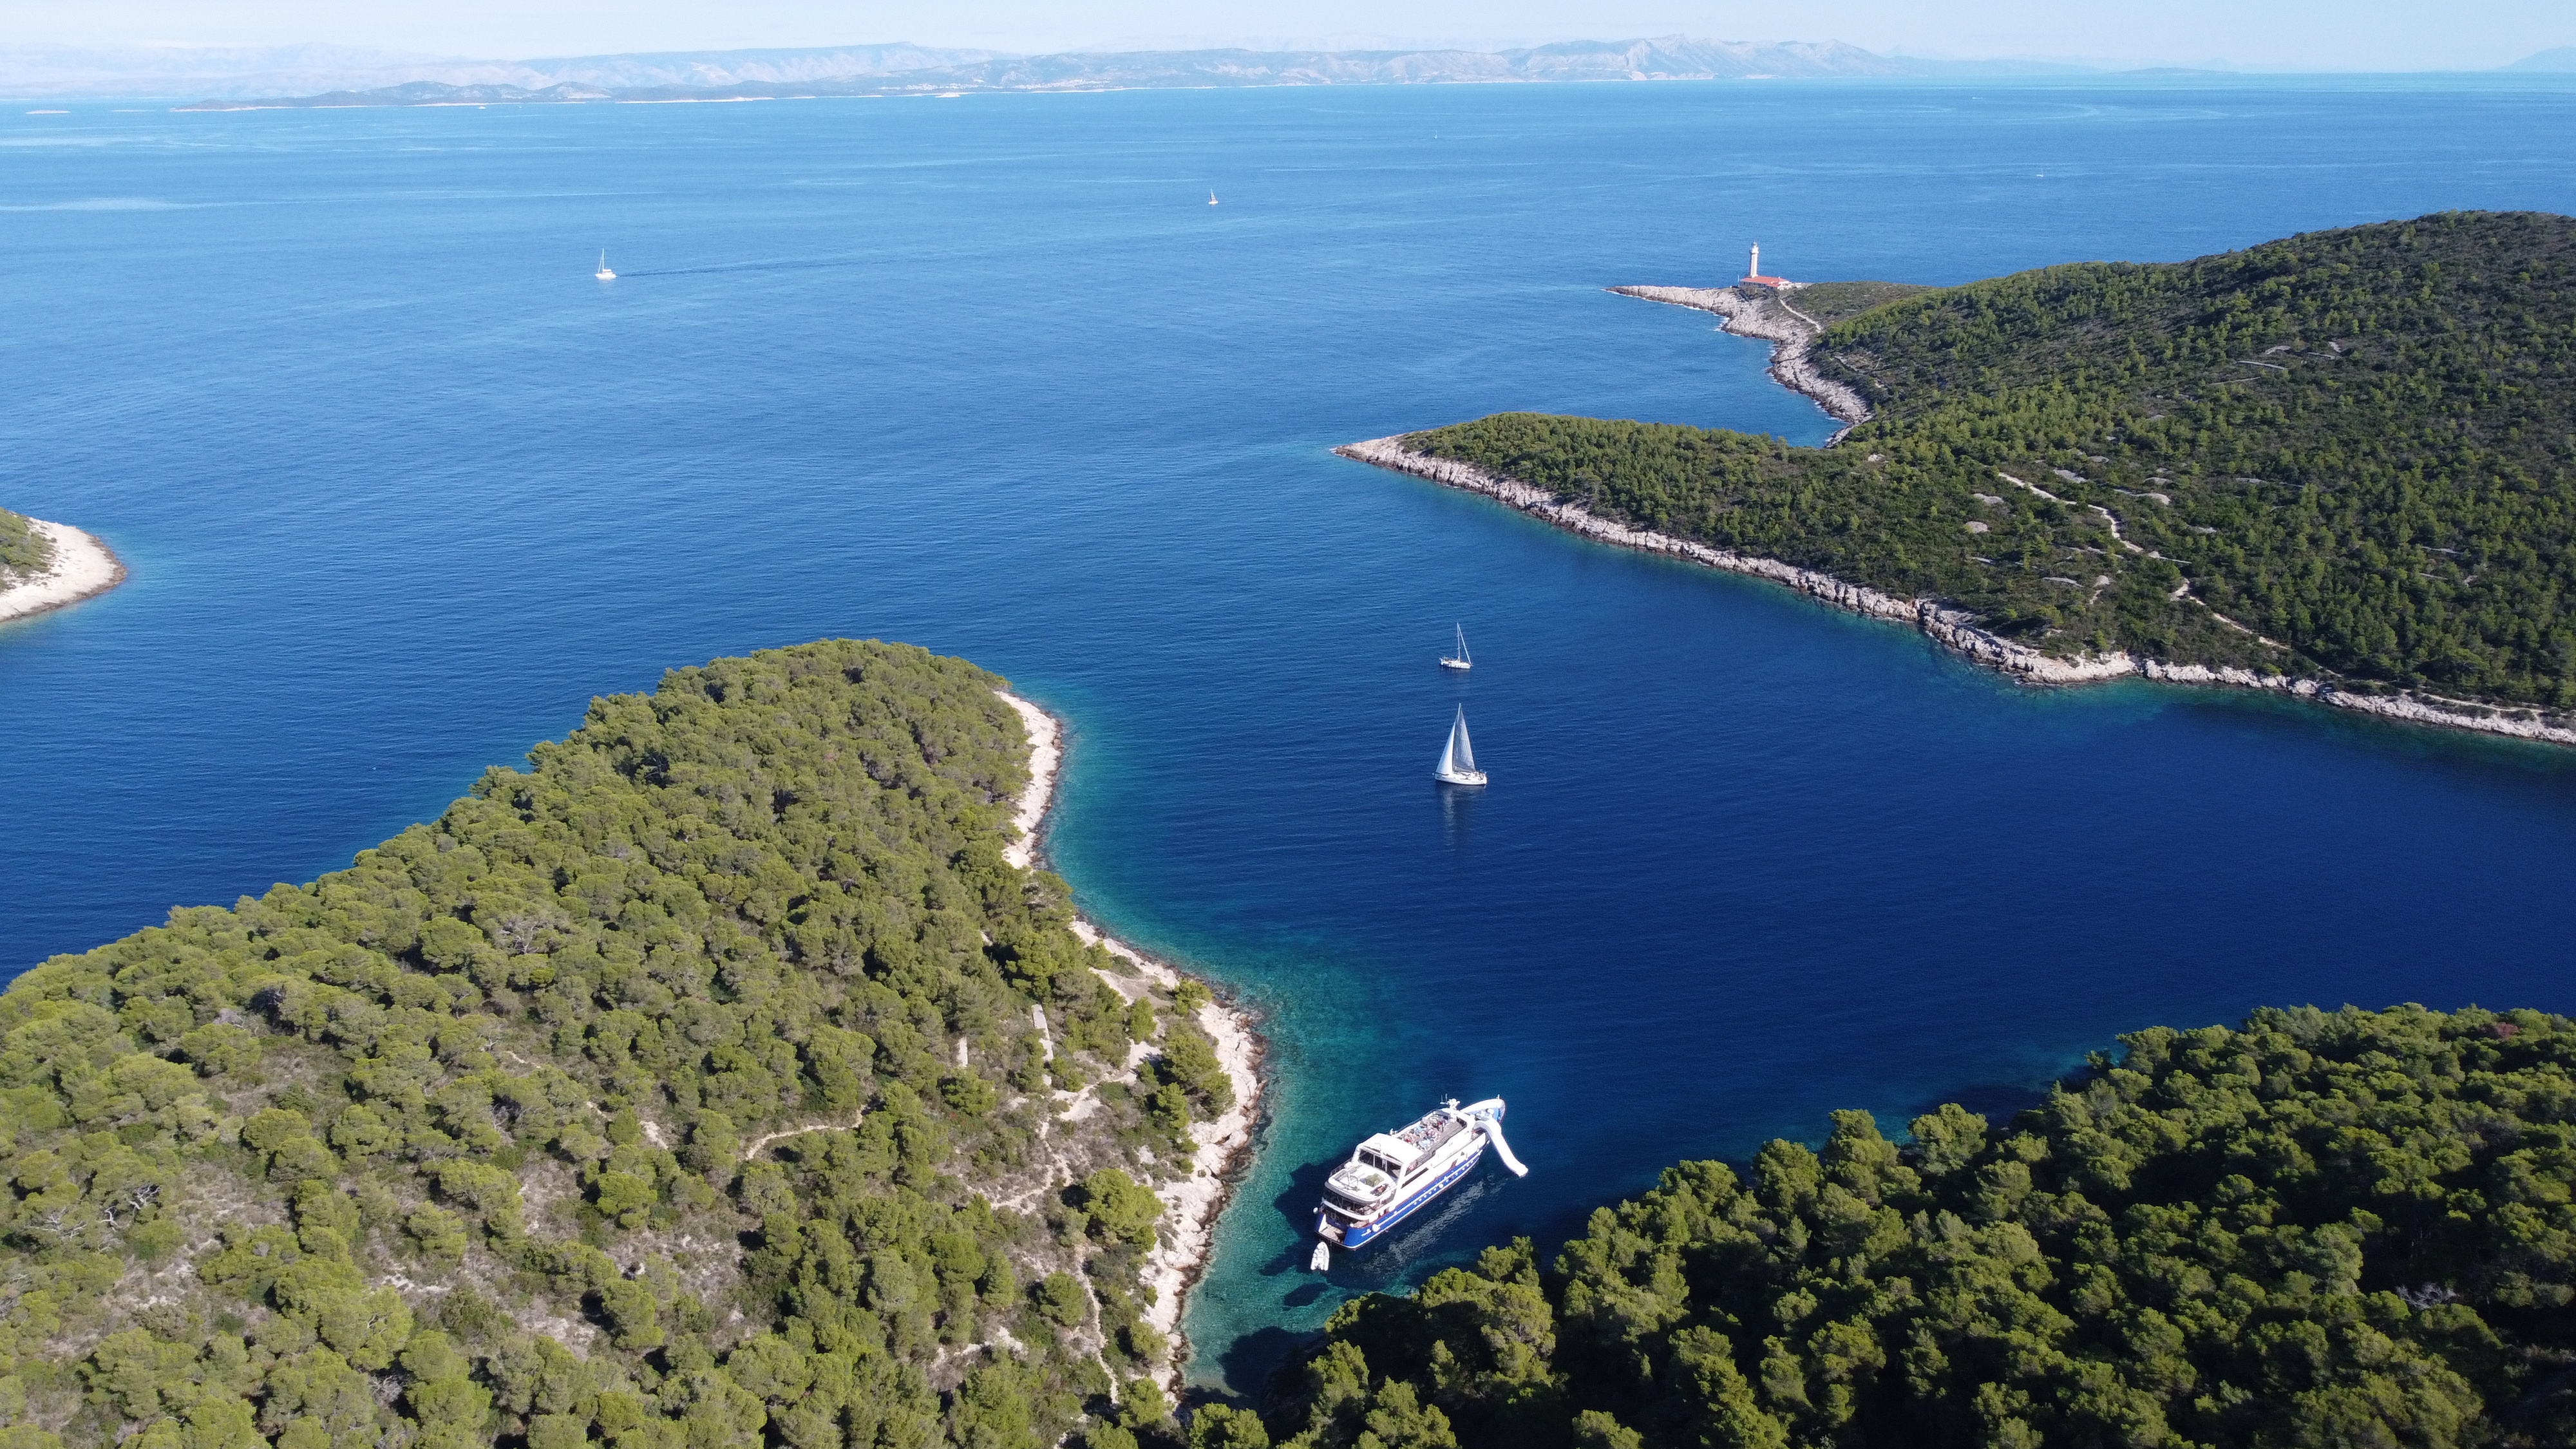 Eastern Mediterranean - Croatia - Yacht In A Bay